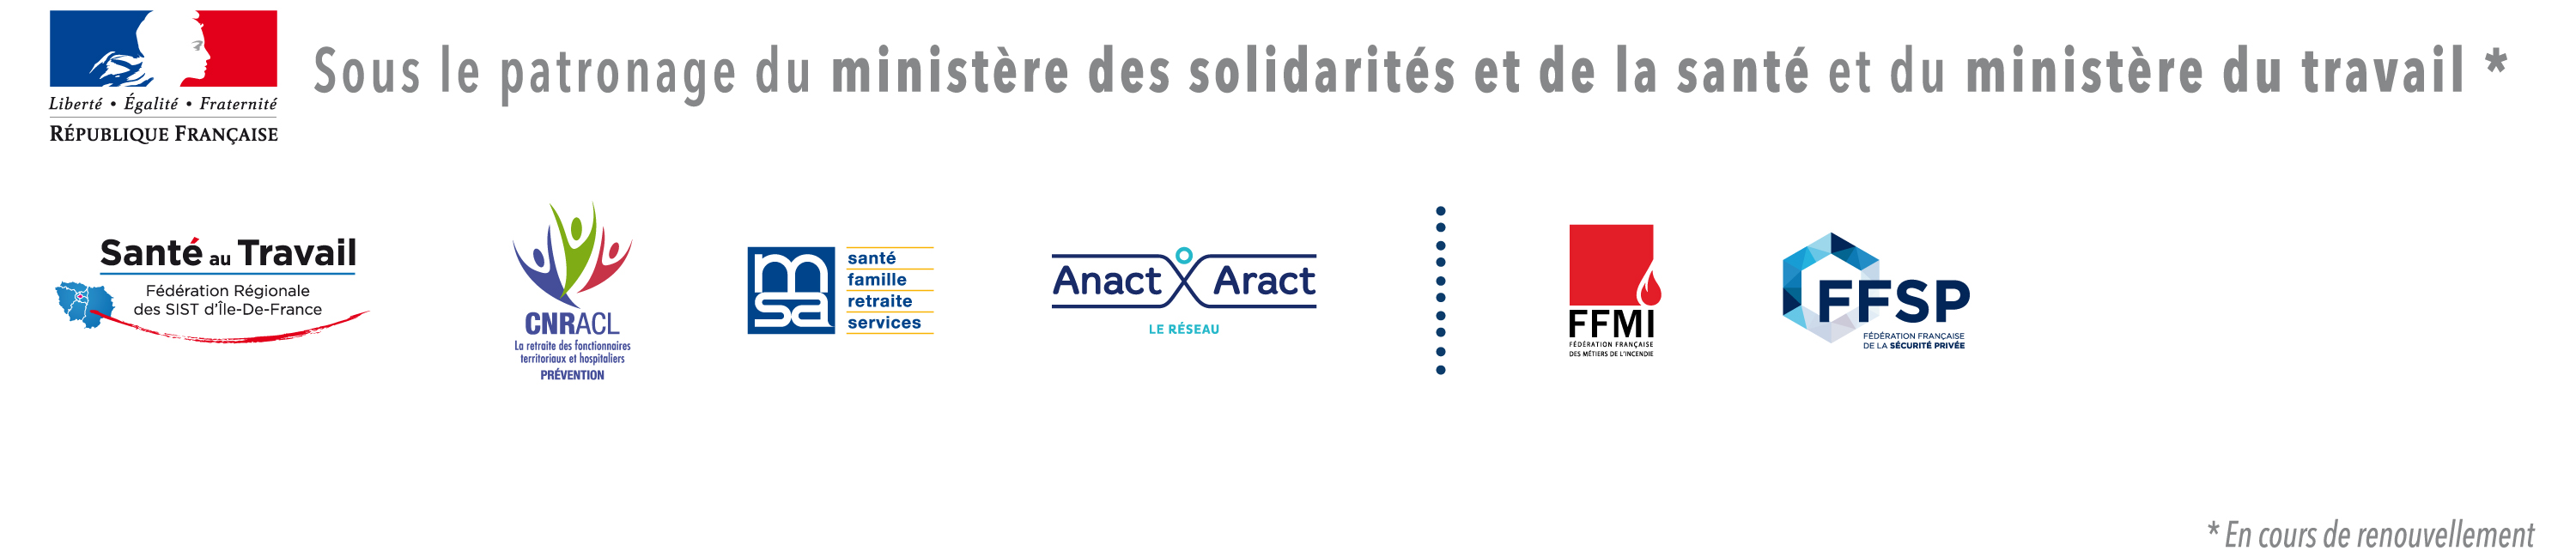 Partenaires Préventica Paris 2021